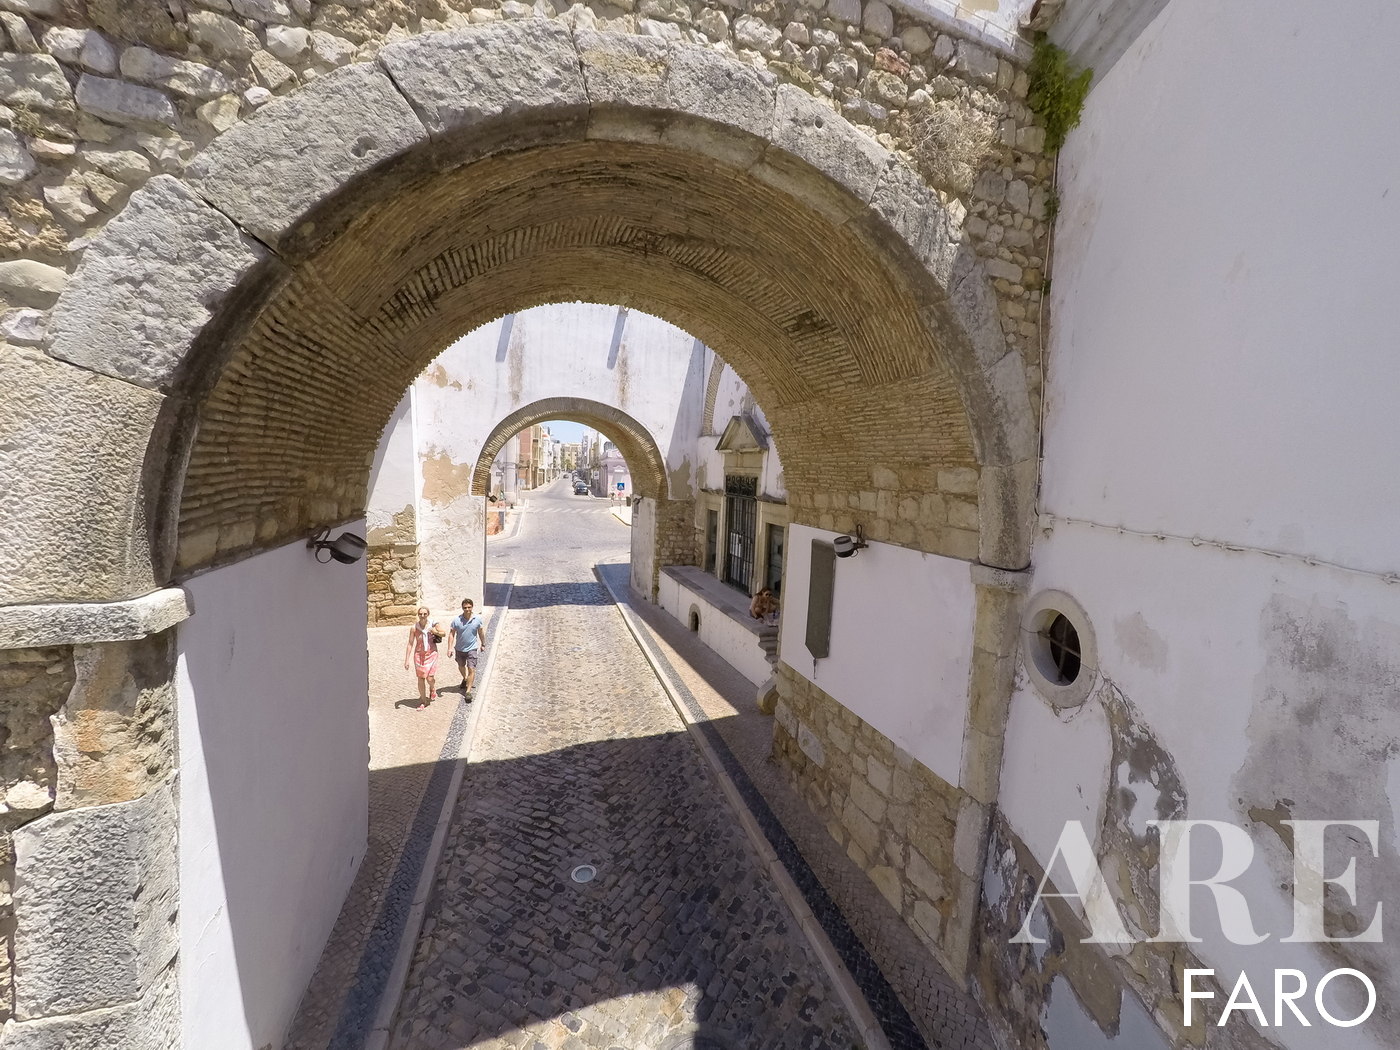 Arcos da cidade velha de Faro. Aqui podemos entrar na cidade e caminhar pela cidade velha. Existem vários restaurantes e áreas de serviço